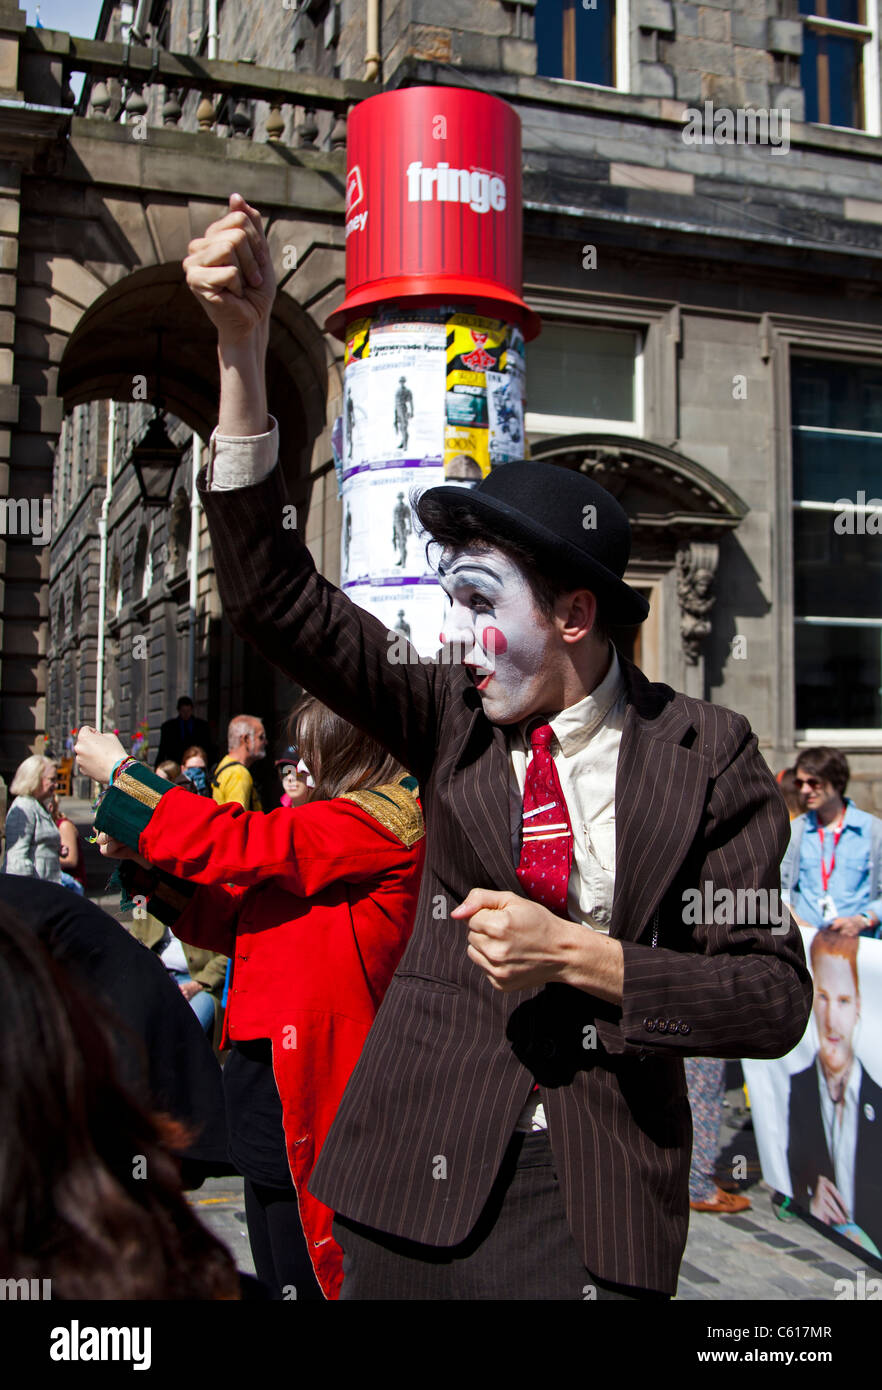 Festival Fringe d'acteur avec clown composent l'Écosse Angleterre Europe 2011 Banque D'Images